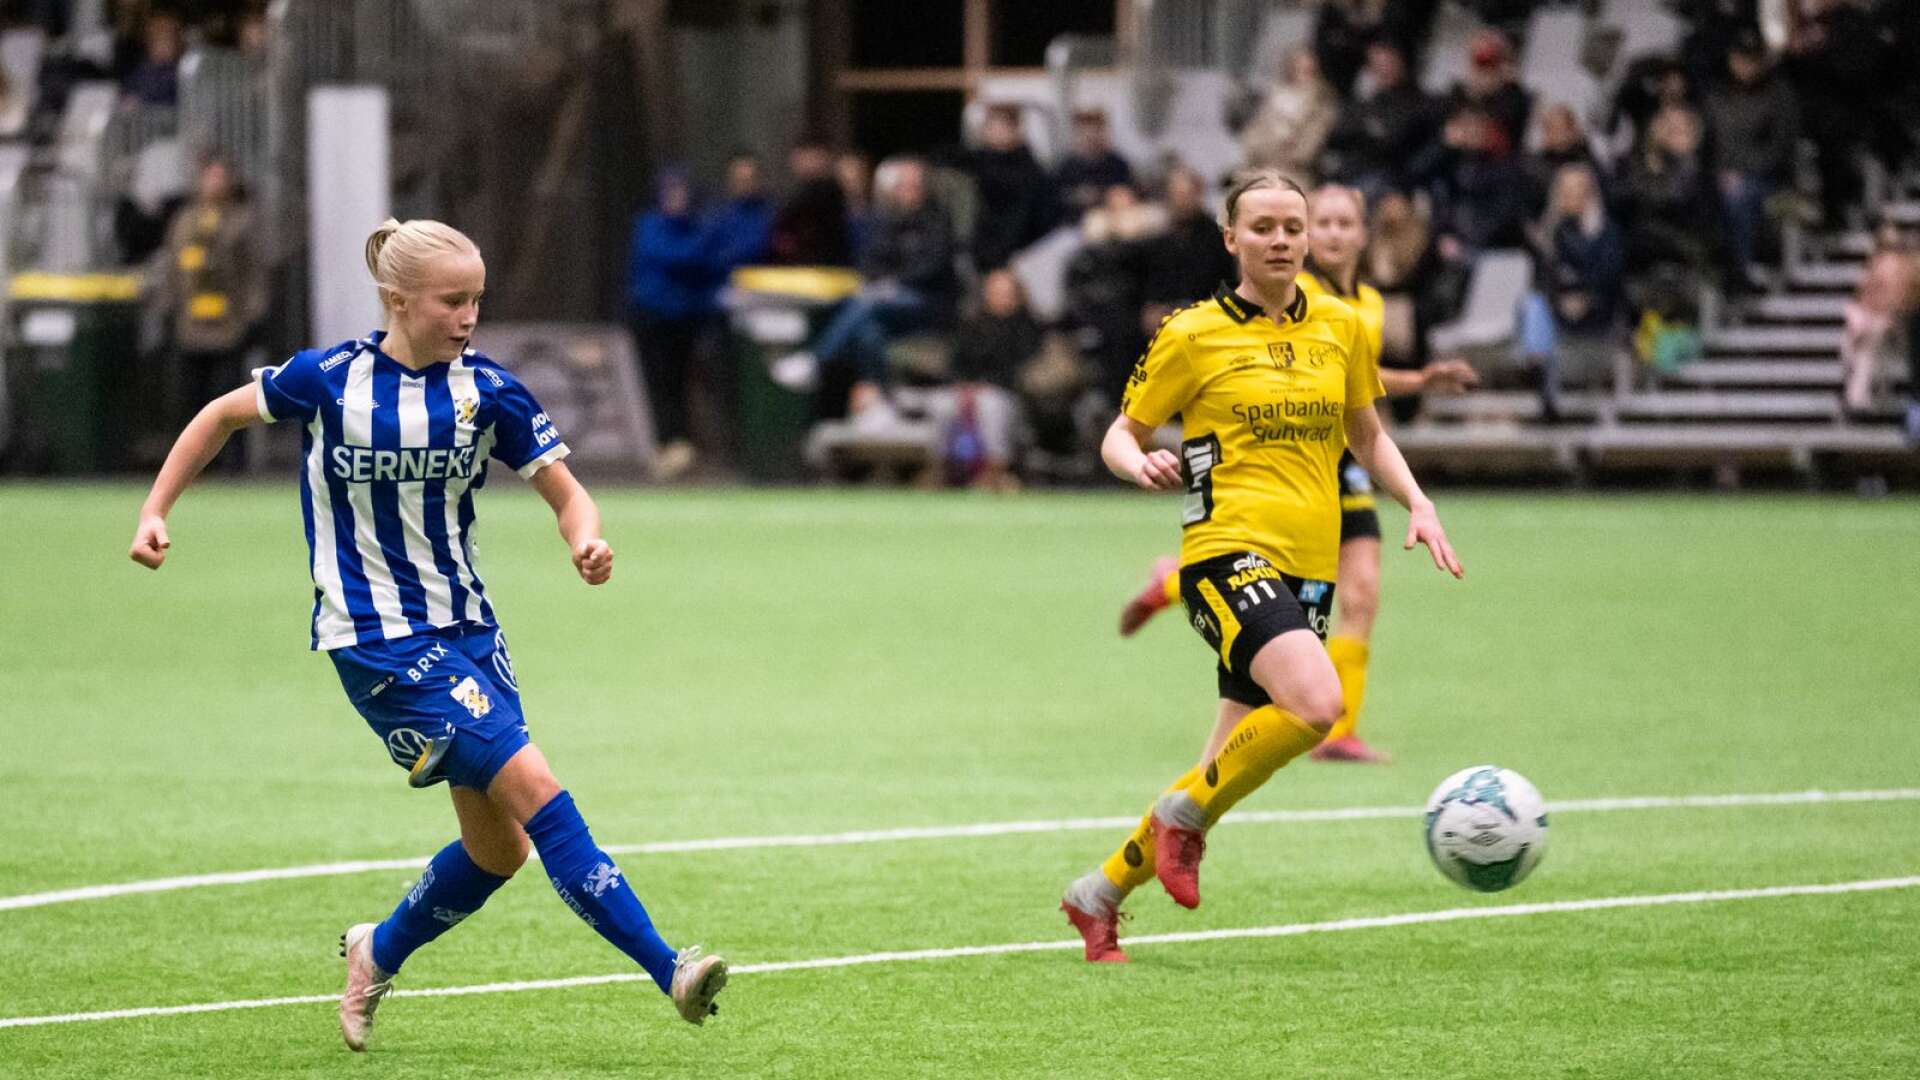 Åmålsspelaren Ida Kjellman skjuter mål för IFK Göteborg under träningsmatchen mot Elfsborg i Borås i lördag. 